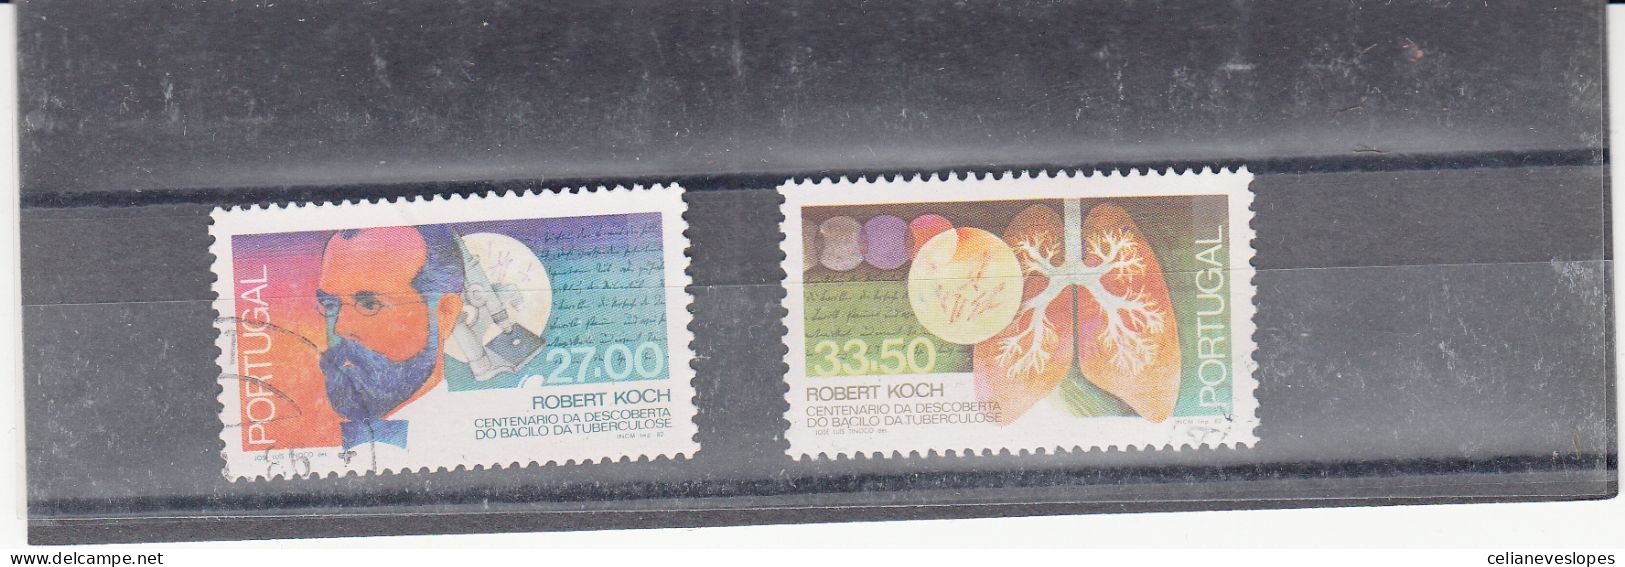 Portugal, Descoberta Do Bacilo Da Tuberculose, 1982, Mundifil Nº 1580 A 1581 Used - Used Stamps